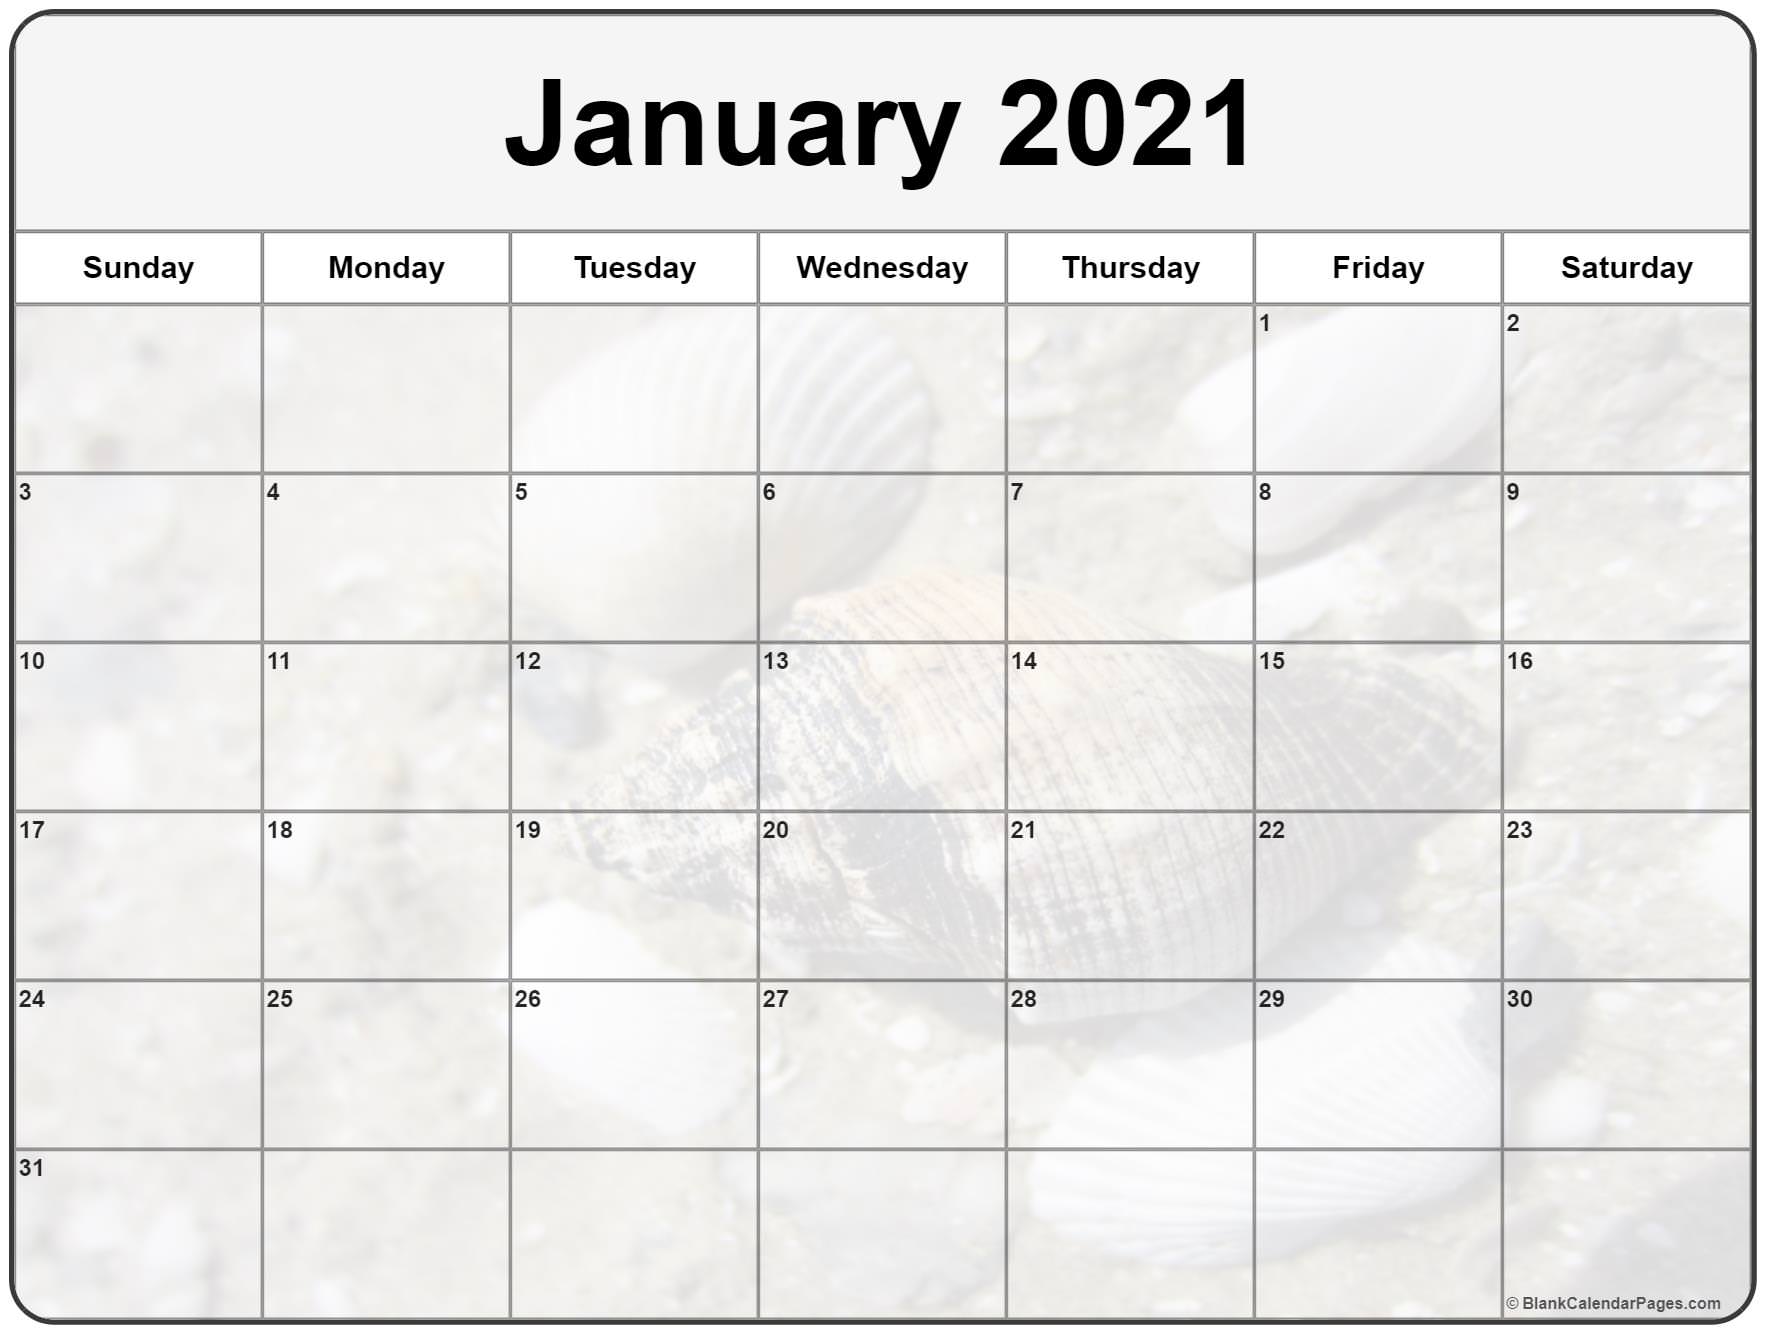 January 2021 Calendar Wallpaper Wallpaper Download 2021 Free